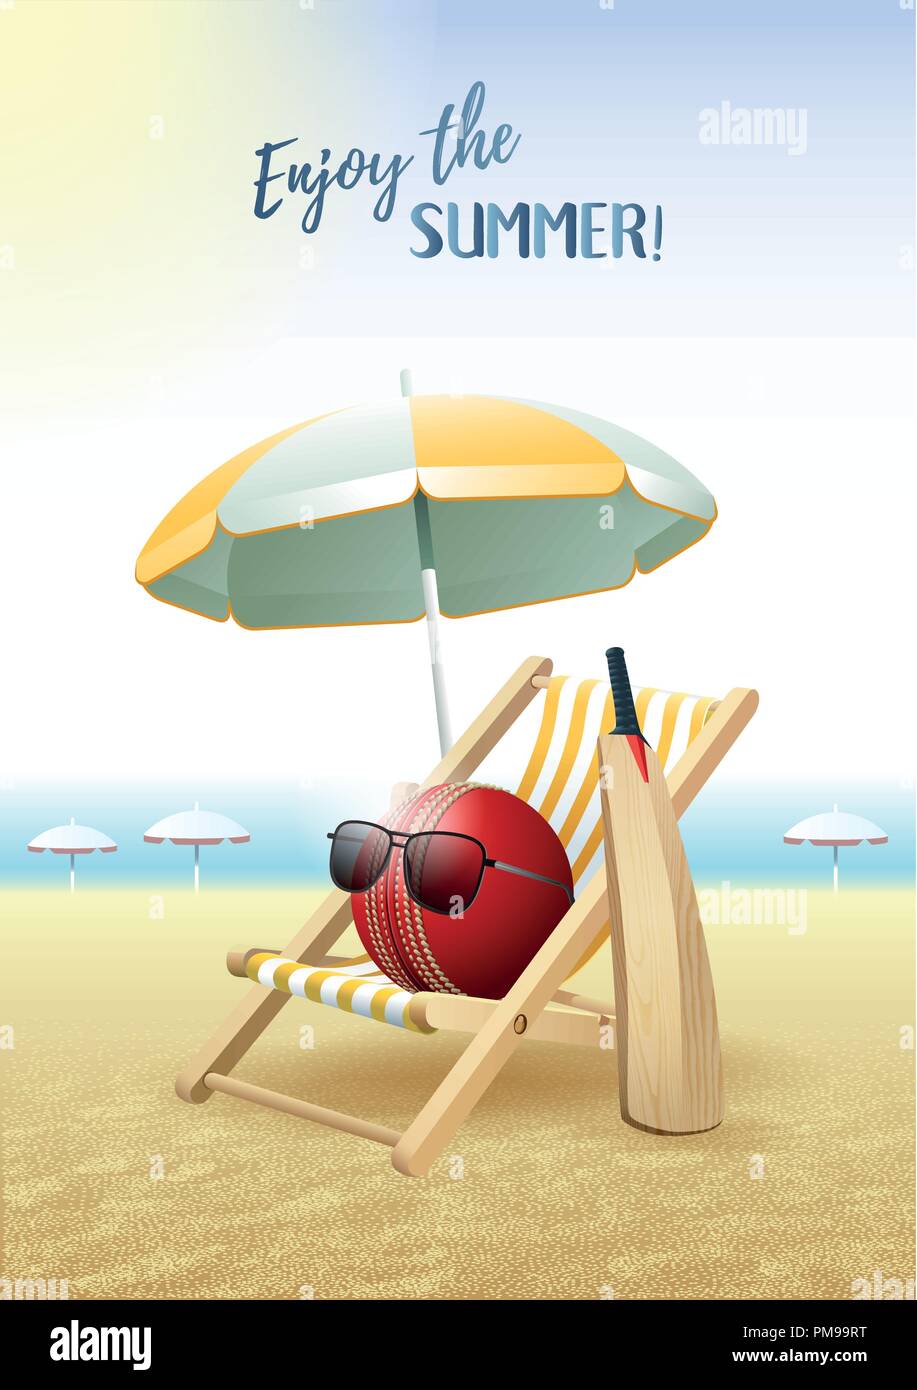 Profitez de l'été ! Carte de sport. Balle de Cricket avec des lunettes de soleil, parasol, chaise longue et bâton de bois sur la plage de sable. Vector illustration. Illustration de Vecteur